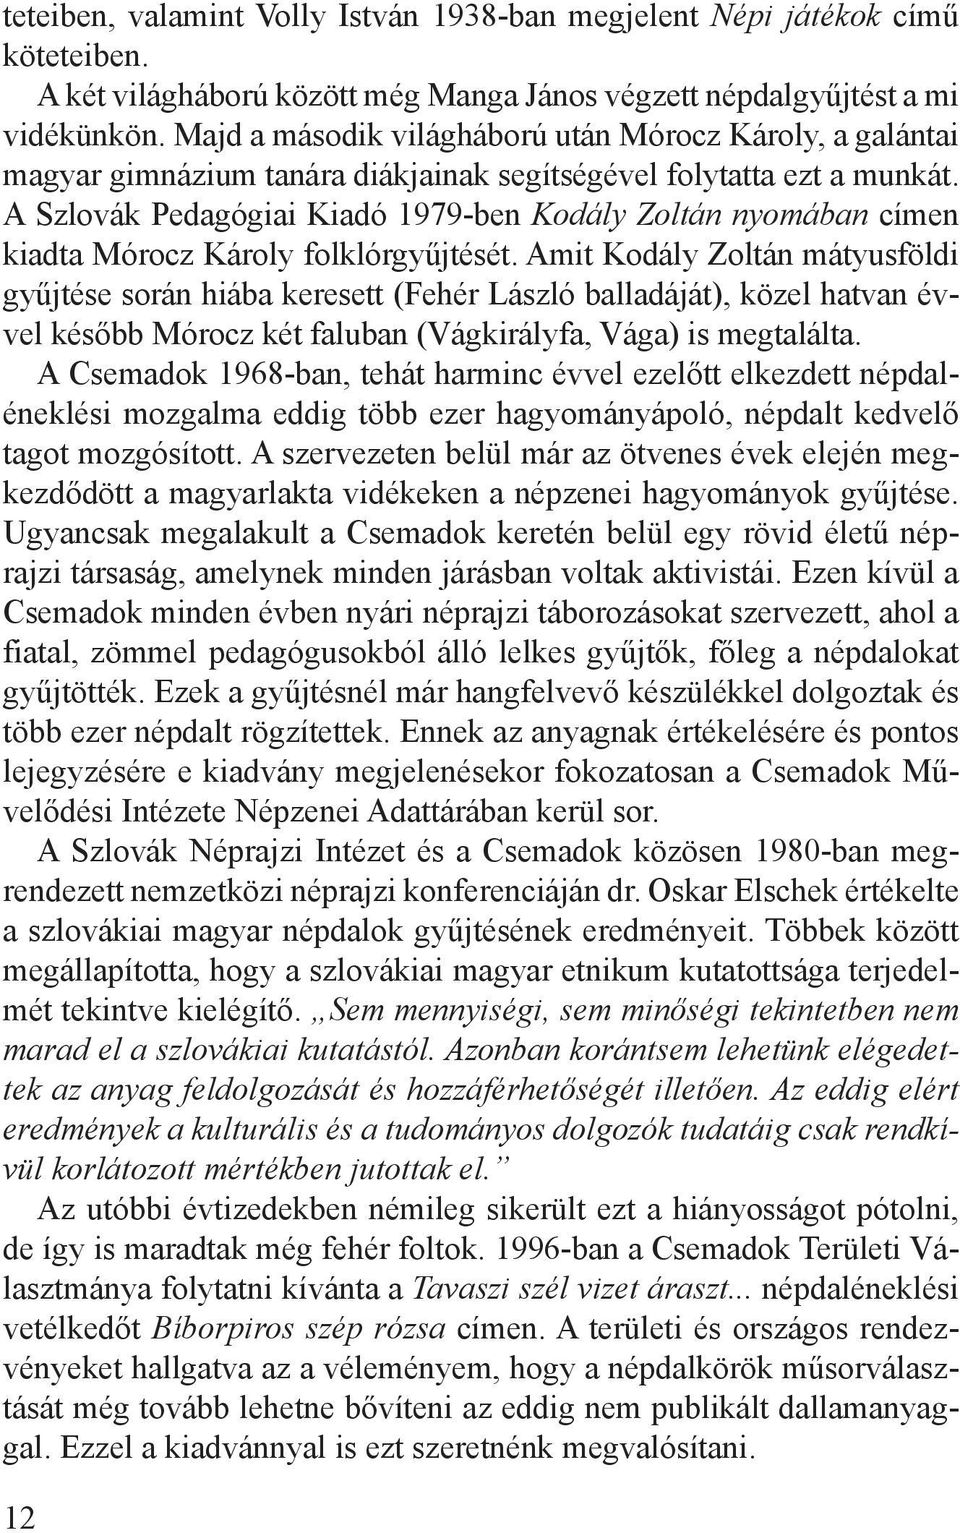 A Szlovák Pedagógiai Kiadó 1979-ben Kodály Zoltán nyomában címen kiadta Mórocz Károly folklórgyűjtését.